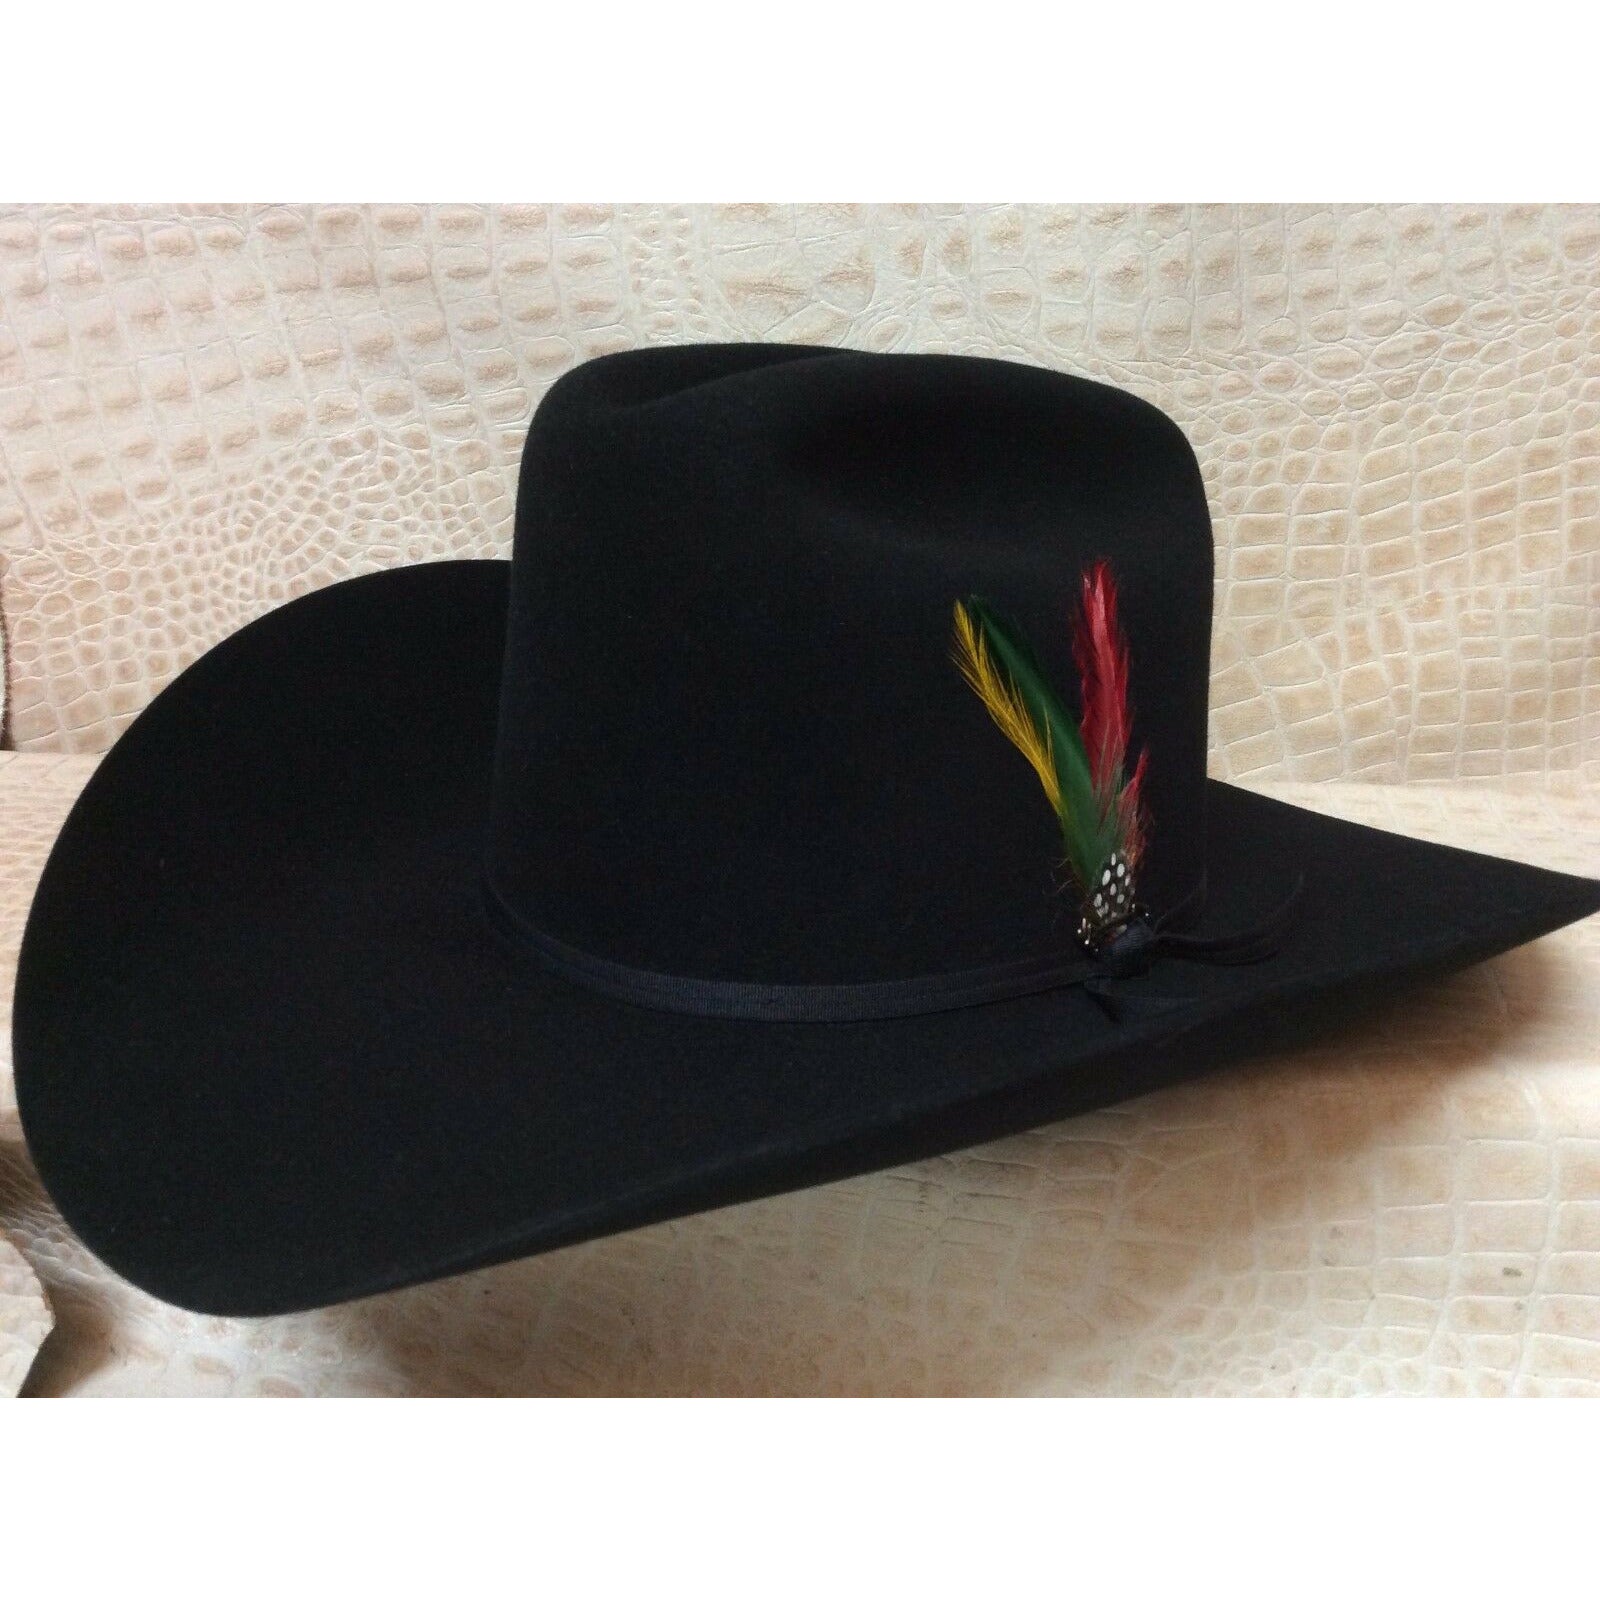 Stetson Rancher Black 6X Beaver Fur Felt Western Cowboy Hat - CWesternwear